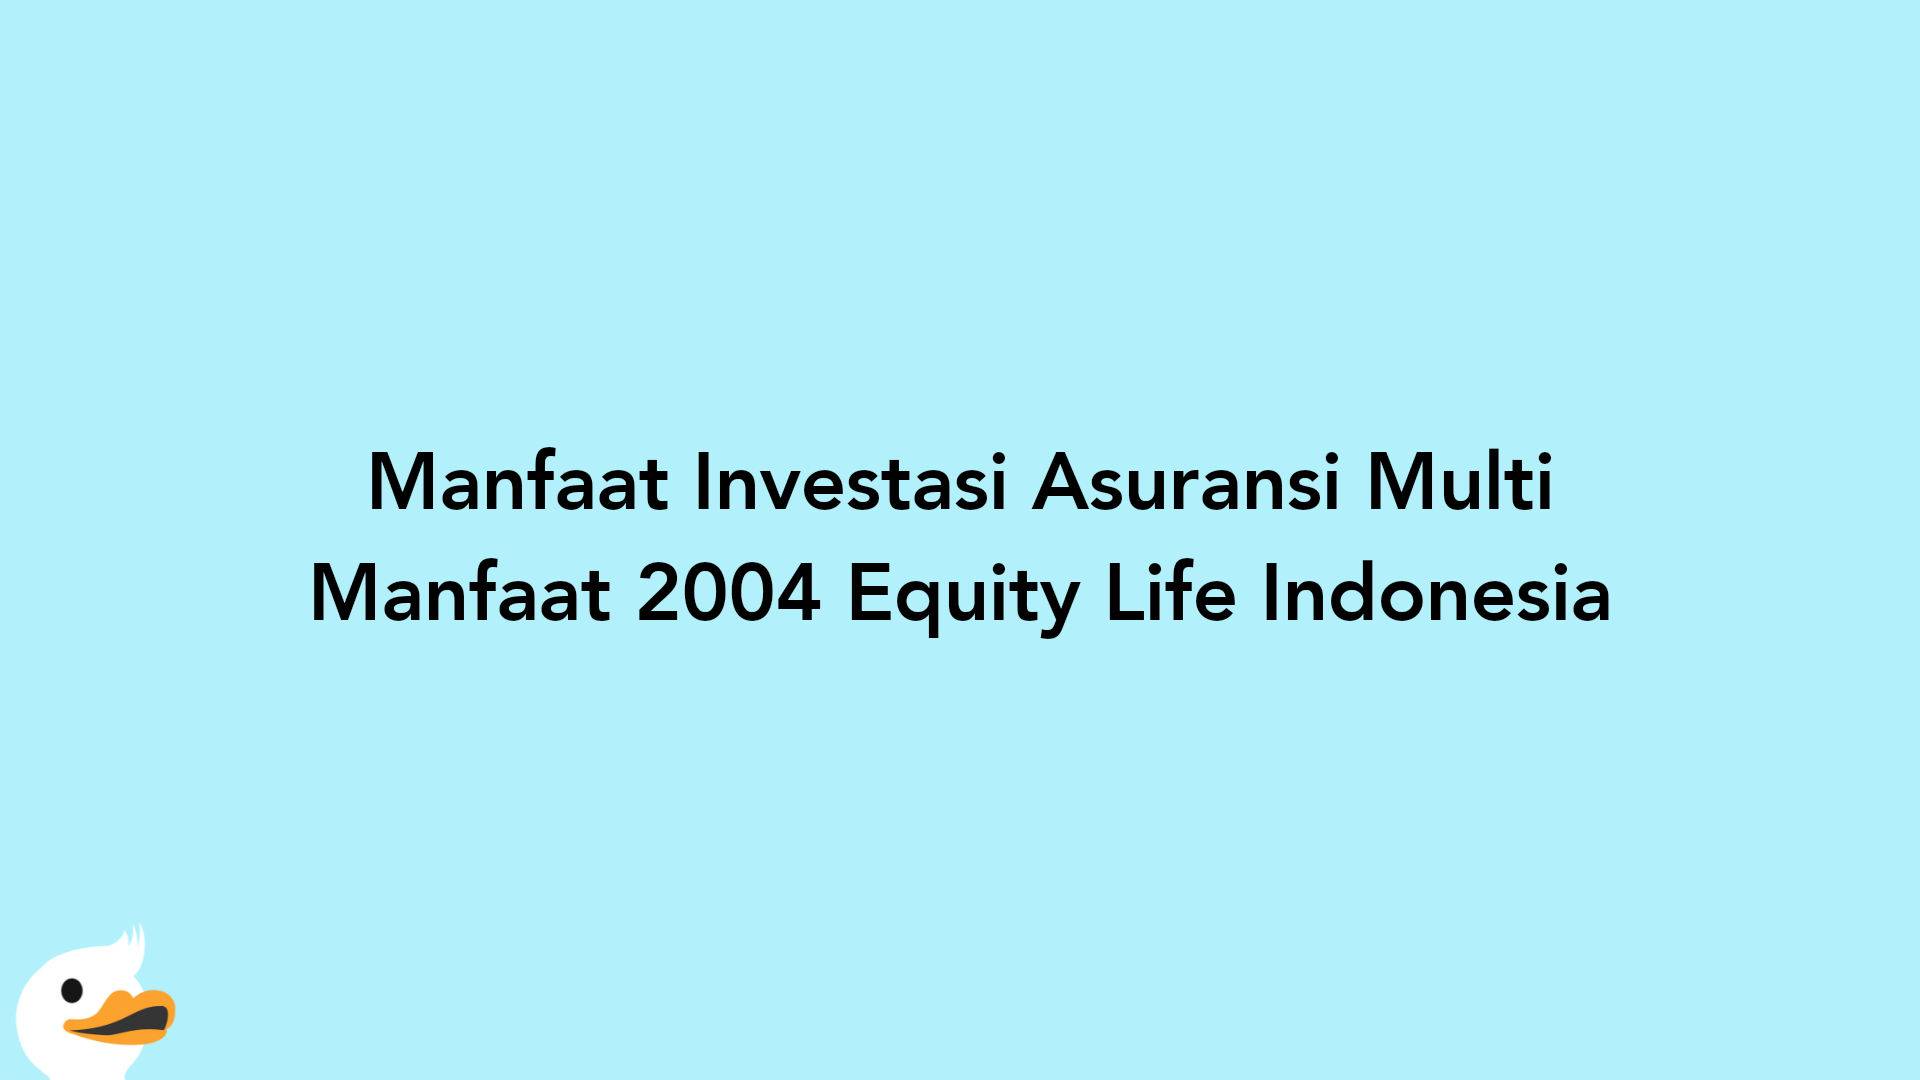 Manfaat Investasi Asuransi Multi Manfaat 2004 Equity Life Indonesia